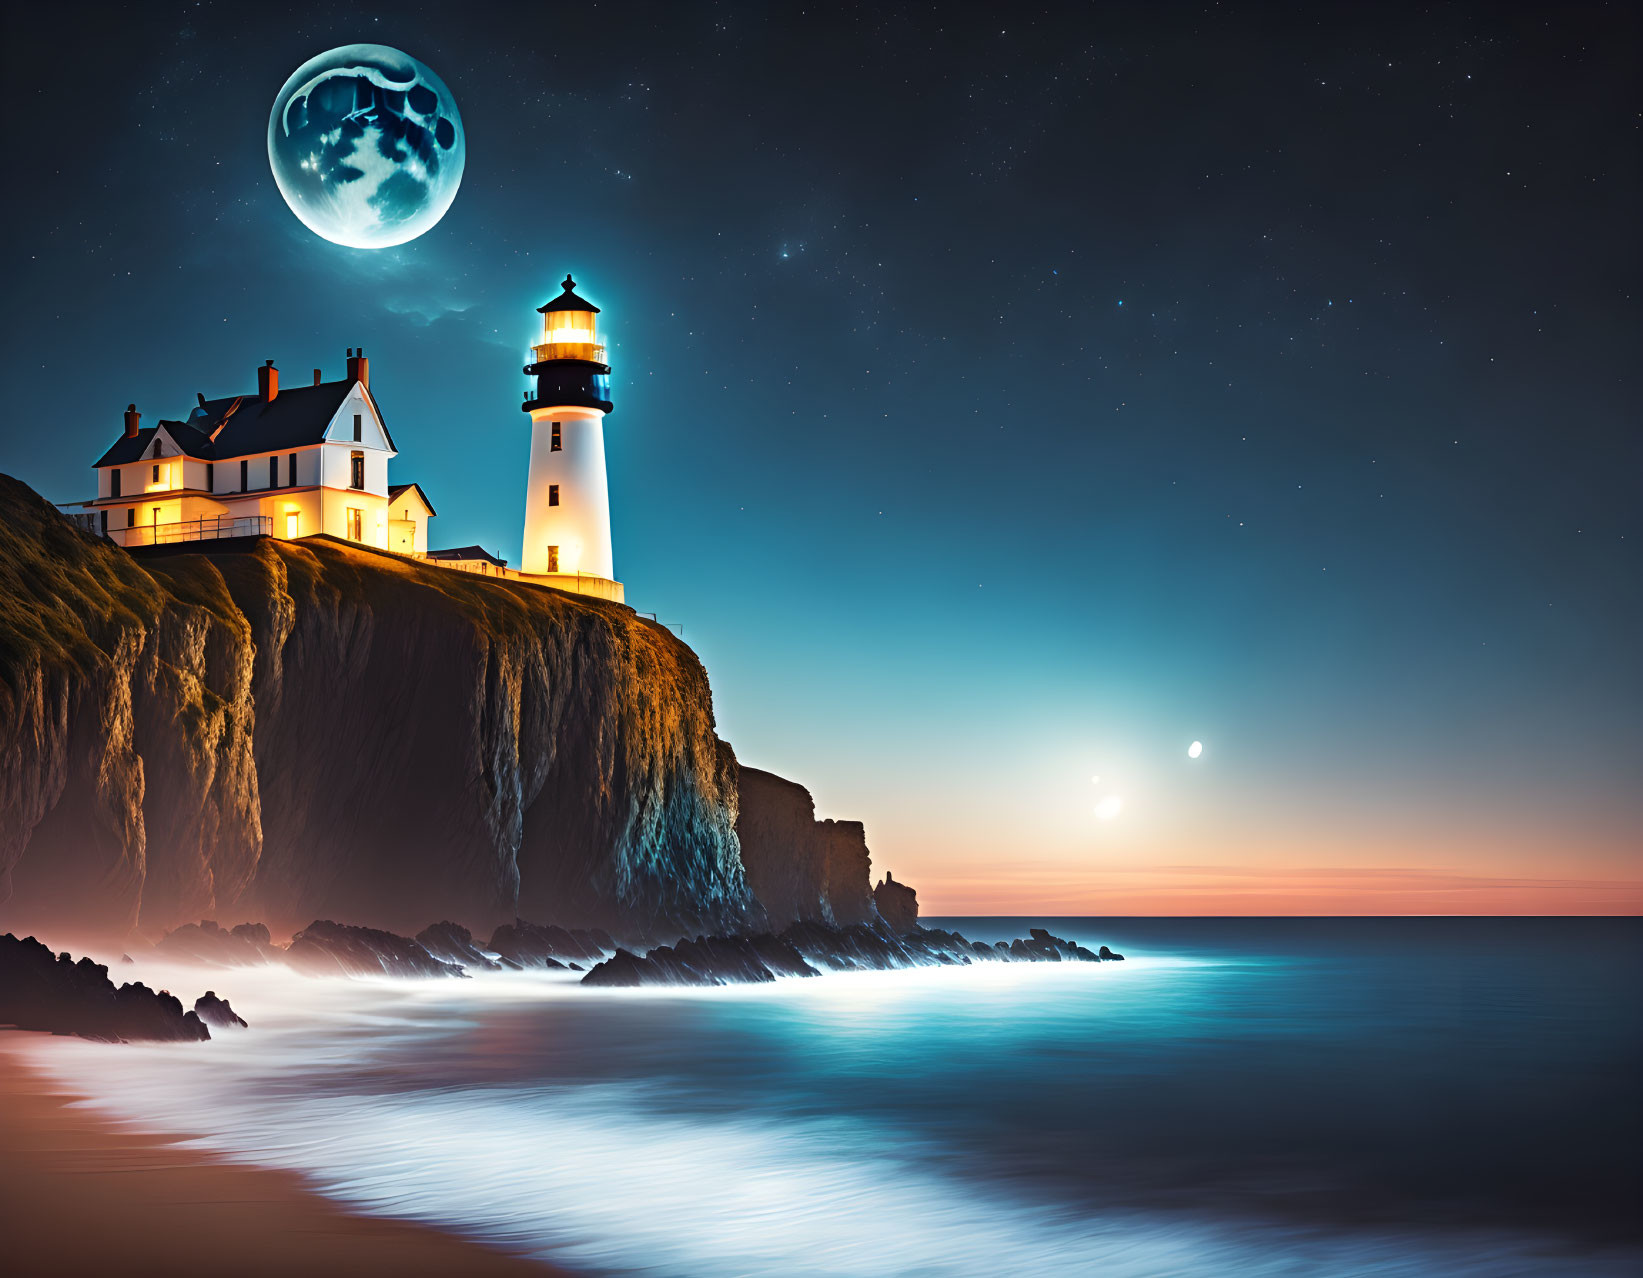 Lighthouse, night coast, cliffs, full moon